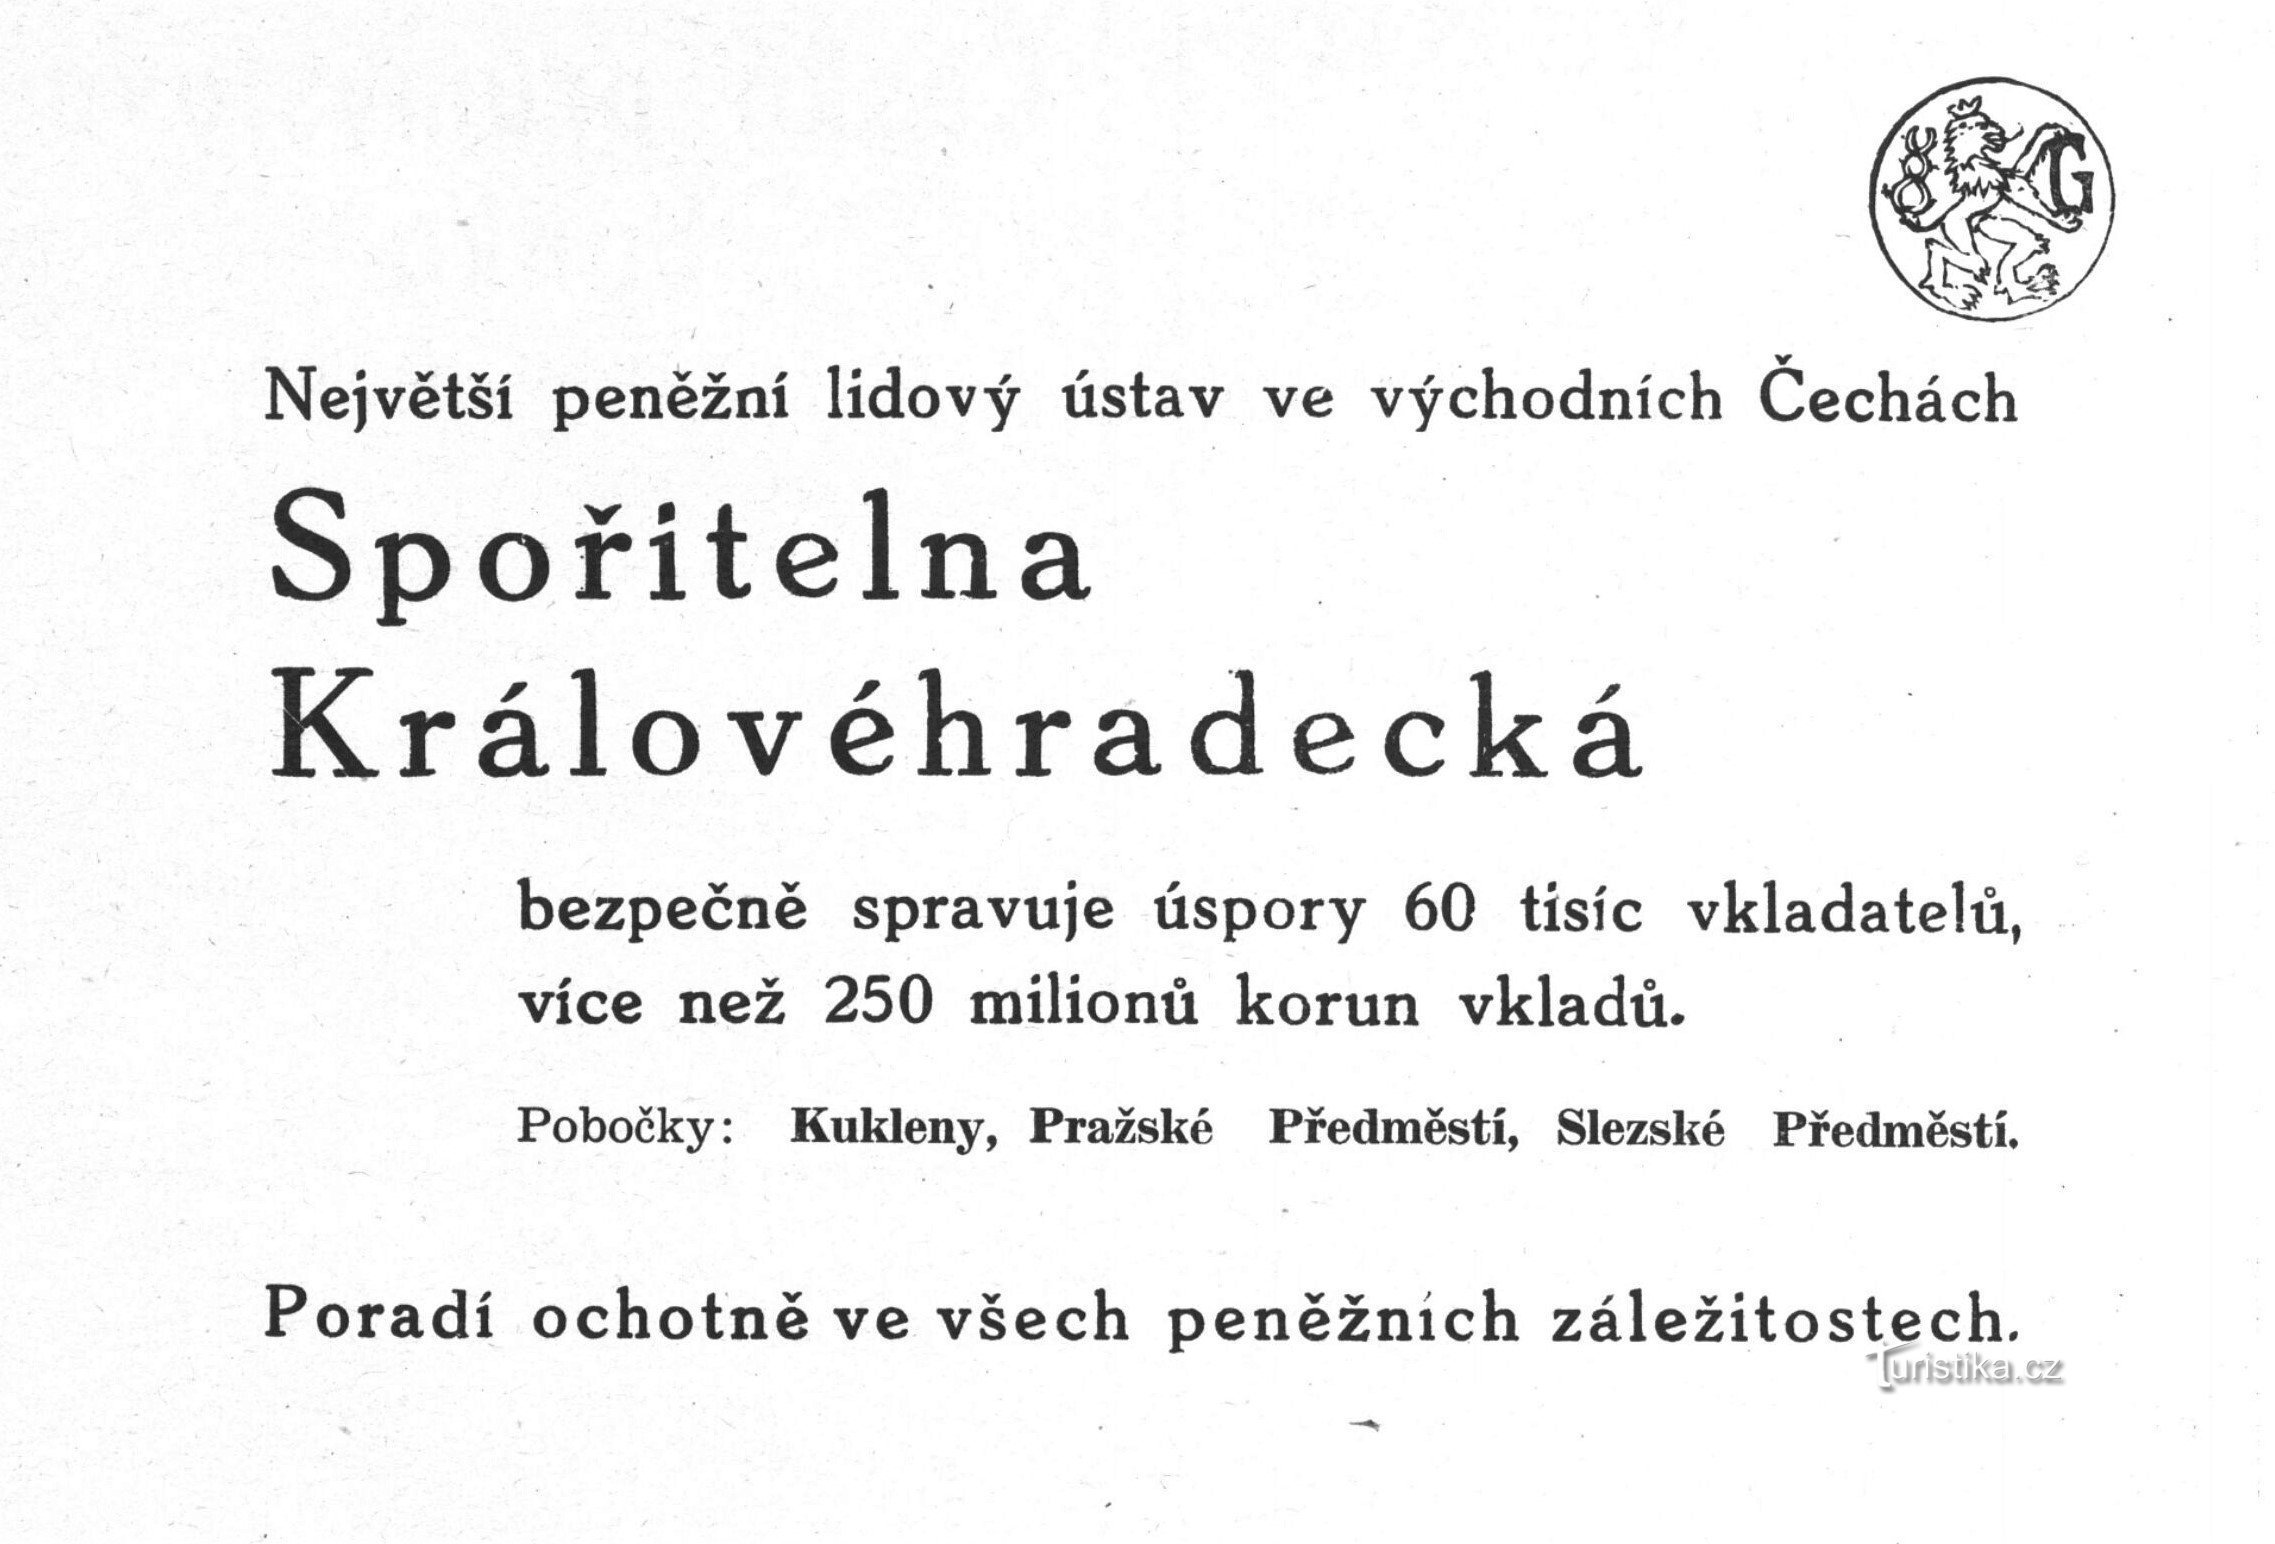 Reklama Spořitelna Královéhradecké iz 1941